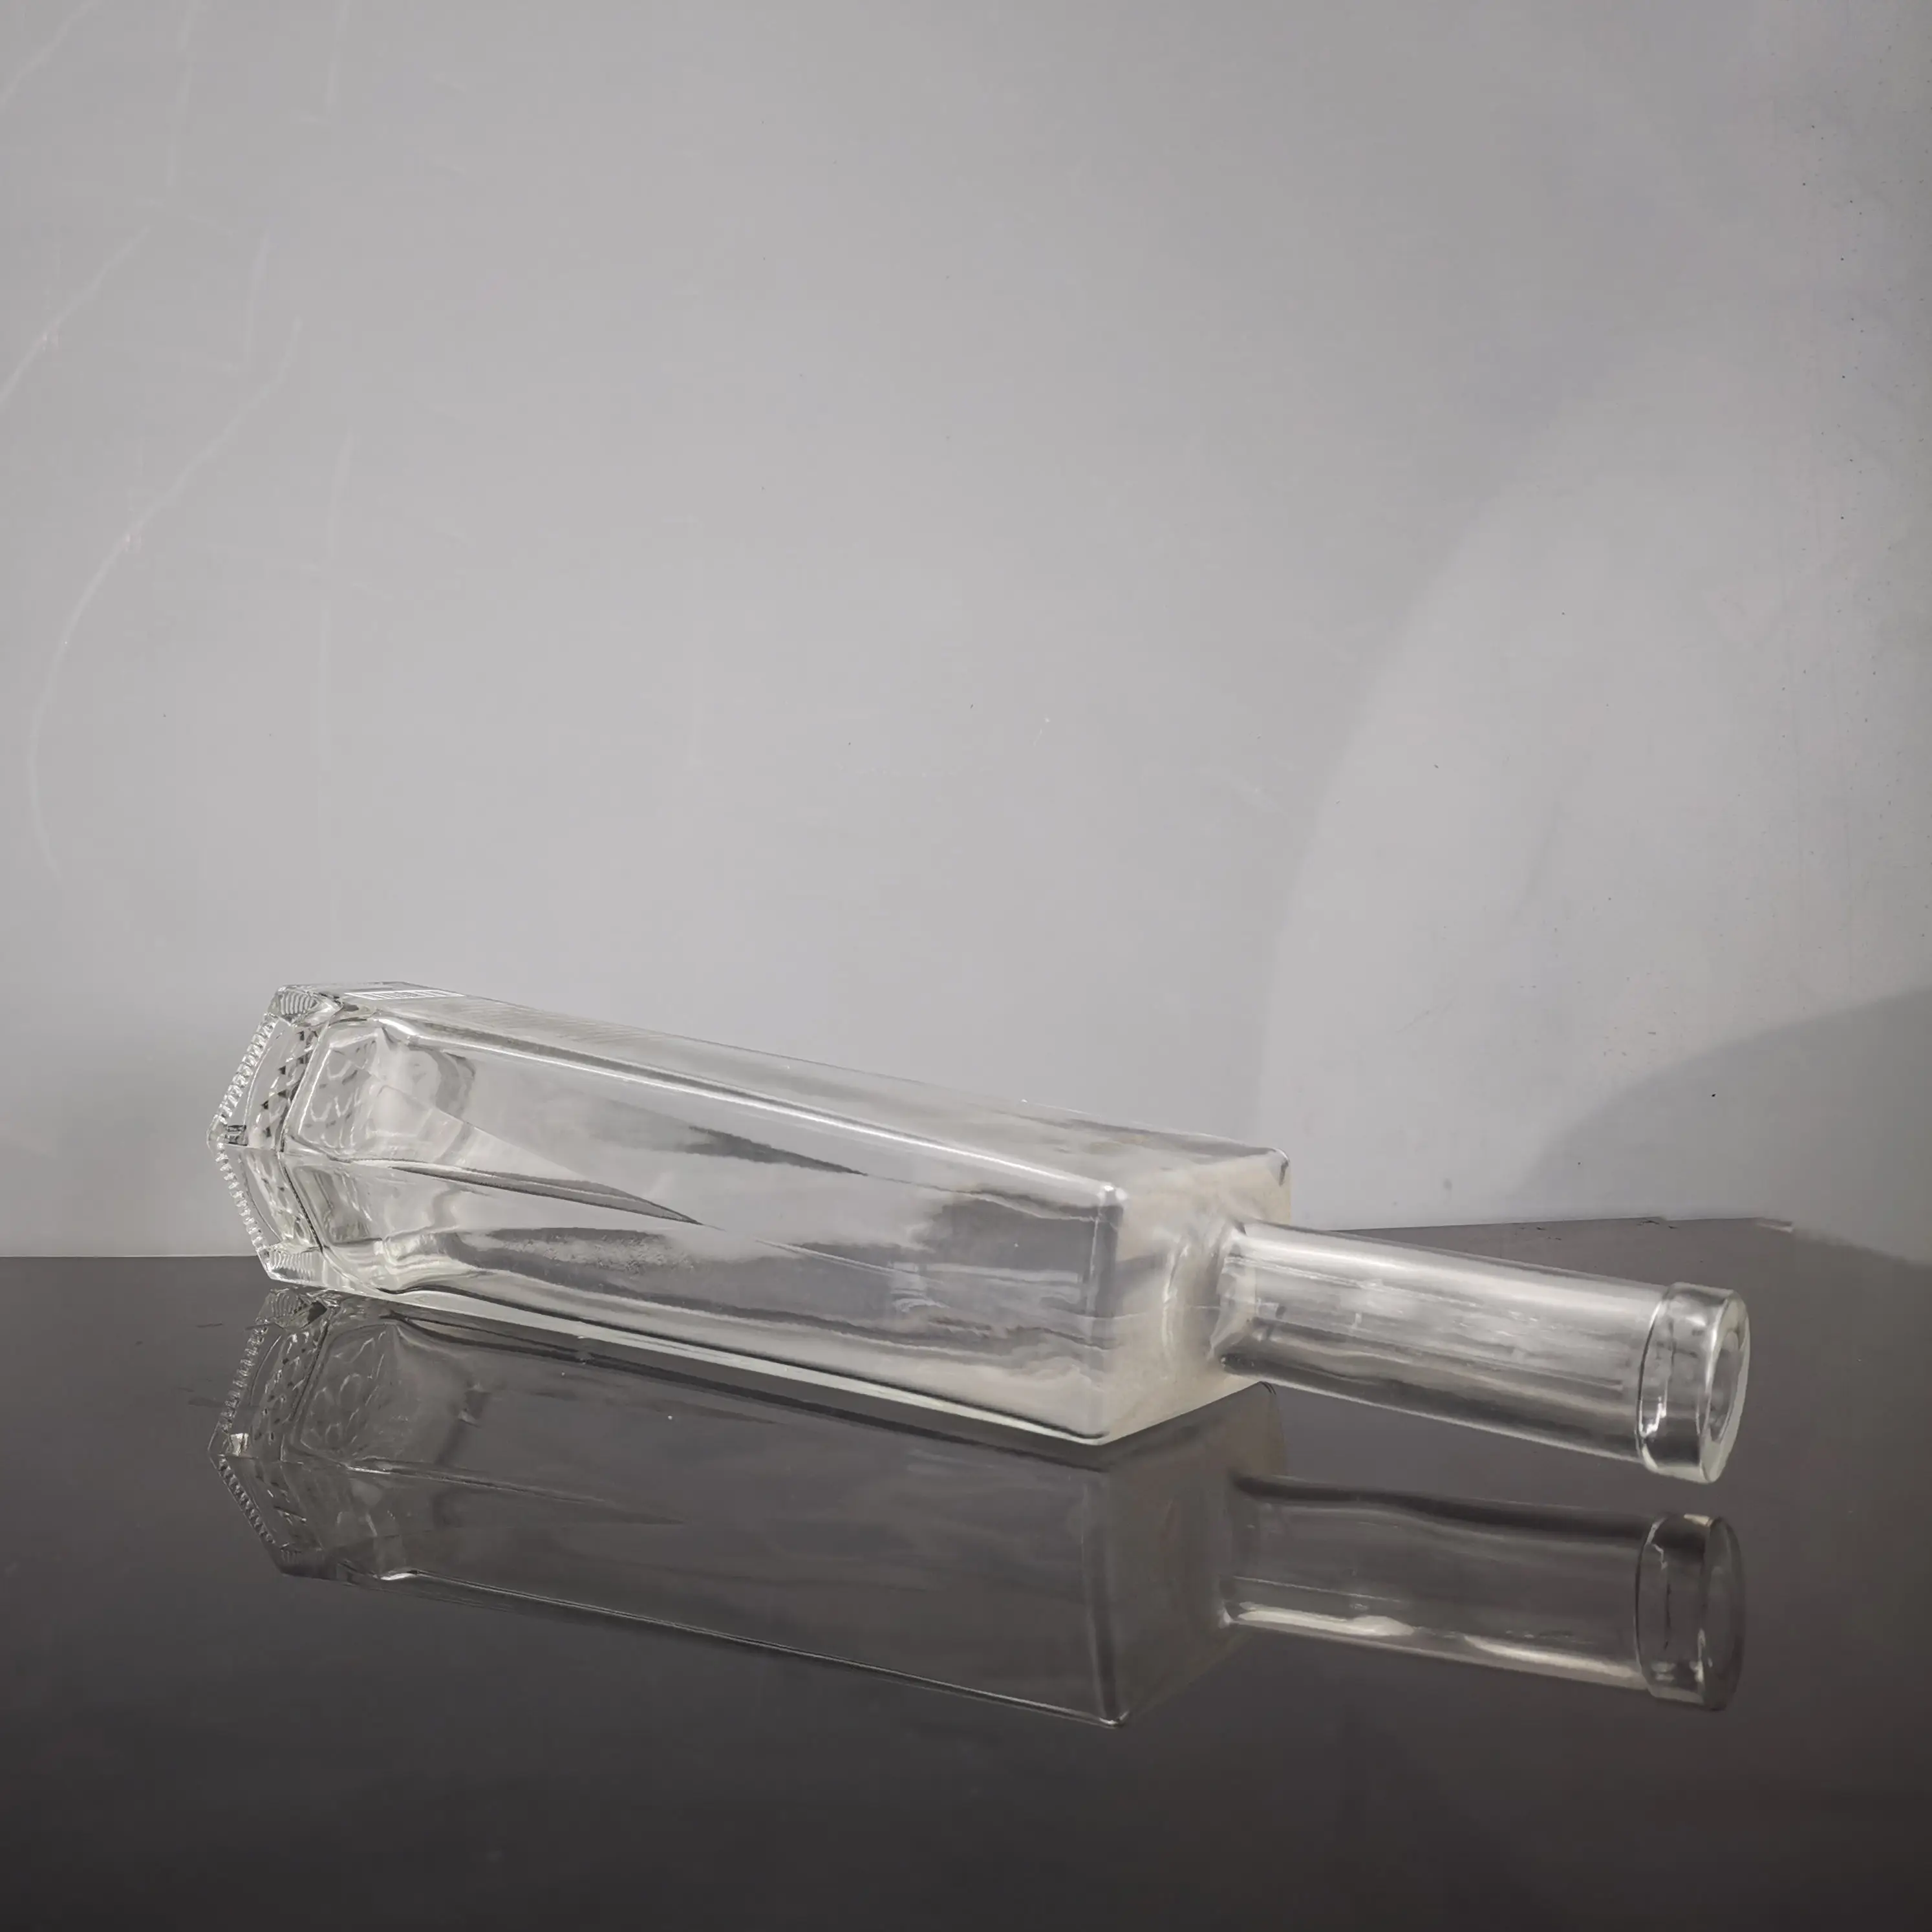 ब्रांडी के लिए अद्वितीय डिजाइन के साथ कस्टम लोगो साफ़ कांच की बोतल